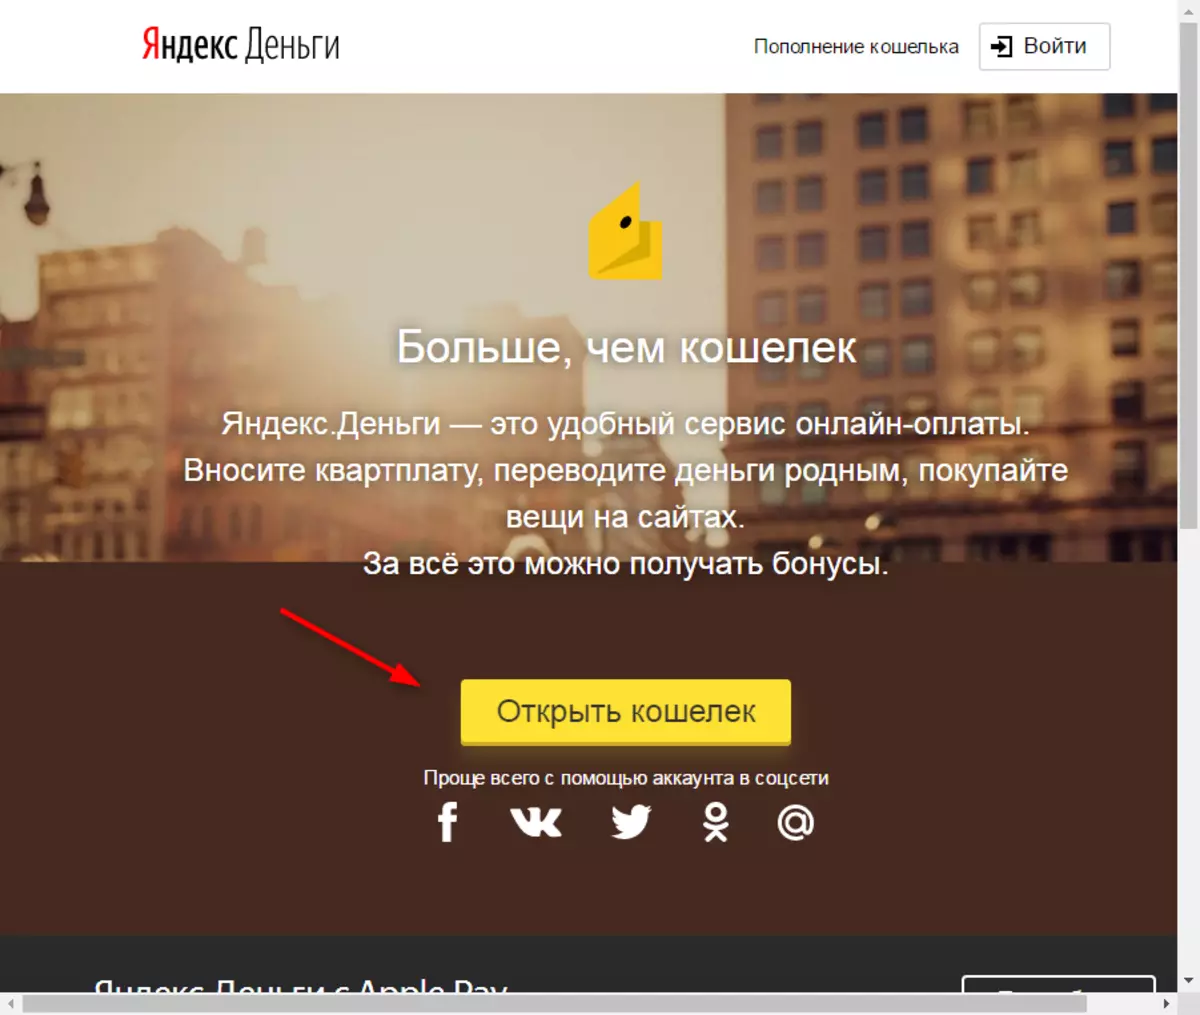 Yandex മണിയിൽ ഒരു വാലറ്റ് എങ്ങനെ സൃഷ്ടിക്കാം 2